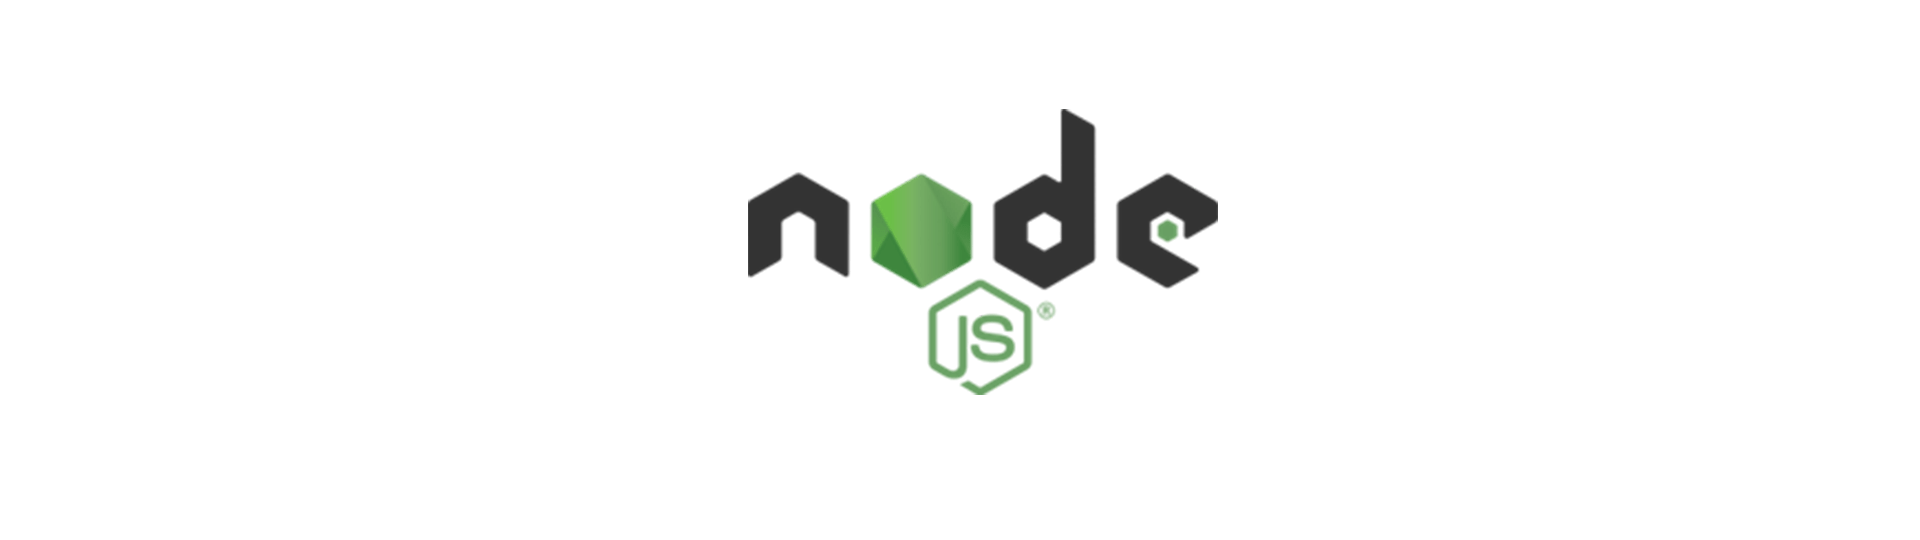 node-js-site.png